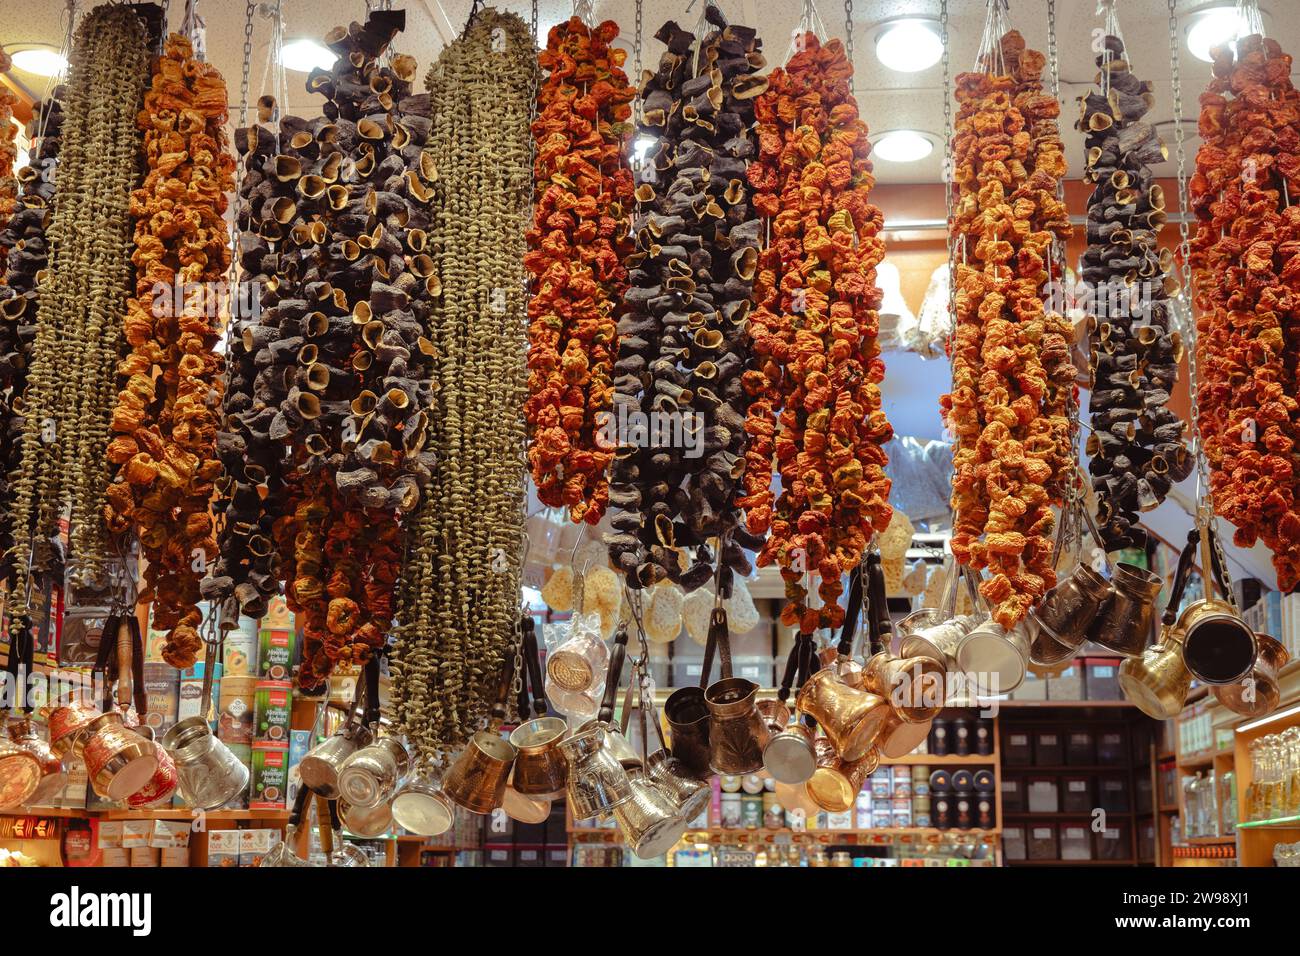 Aubergines séchées au soleil, piments et légumes au bazar aux épices (bazar égyptien - Mısır Çarşısı) à Istanbul, Turquie, construit en 1 Banque D'Images